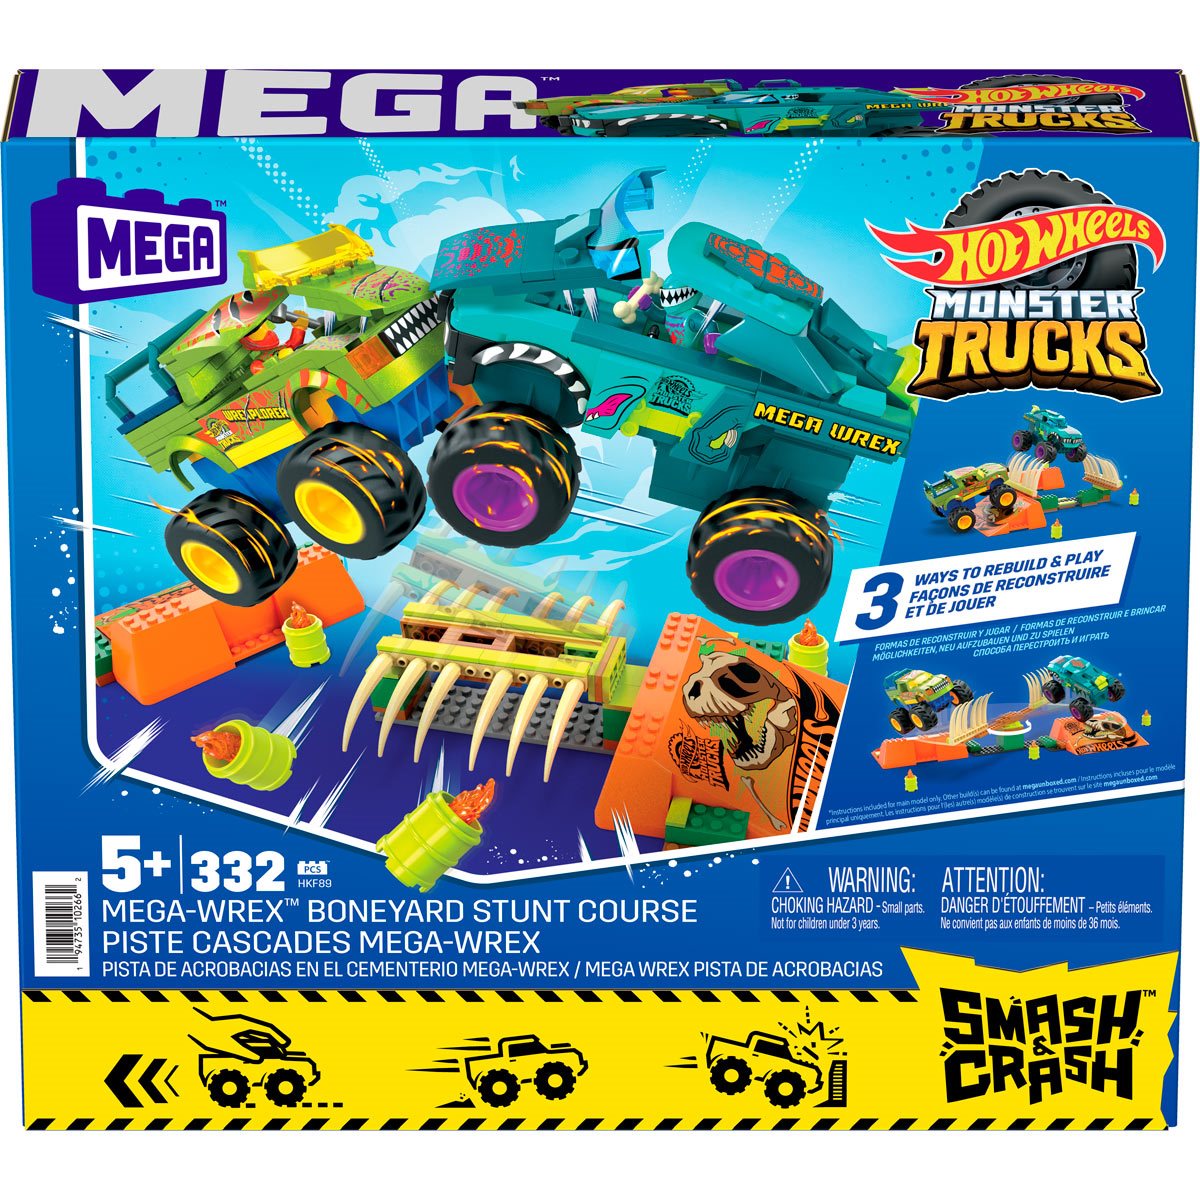 MEGA Hot Wheels Smash N Crash Monster Truck HMM49 Shop Now